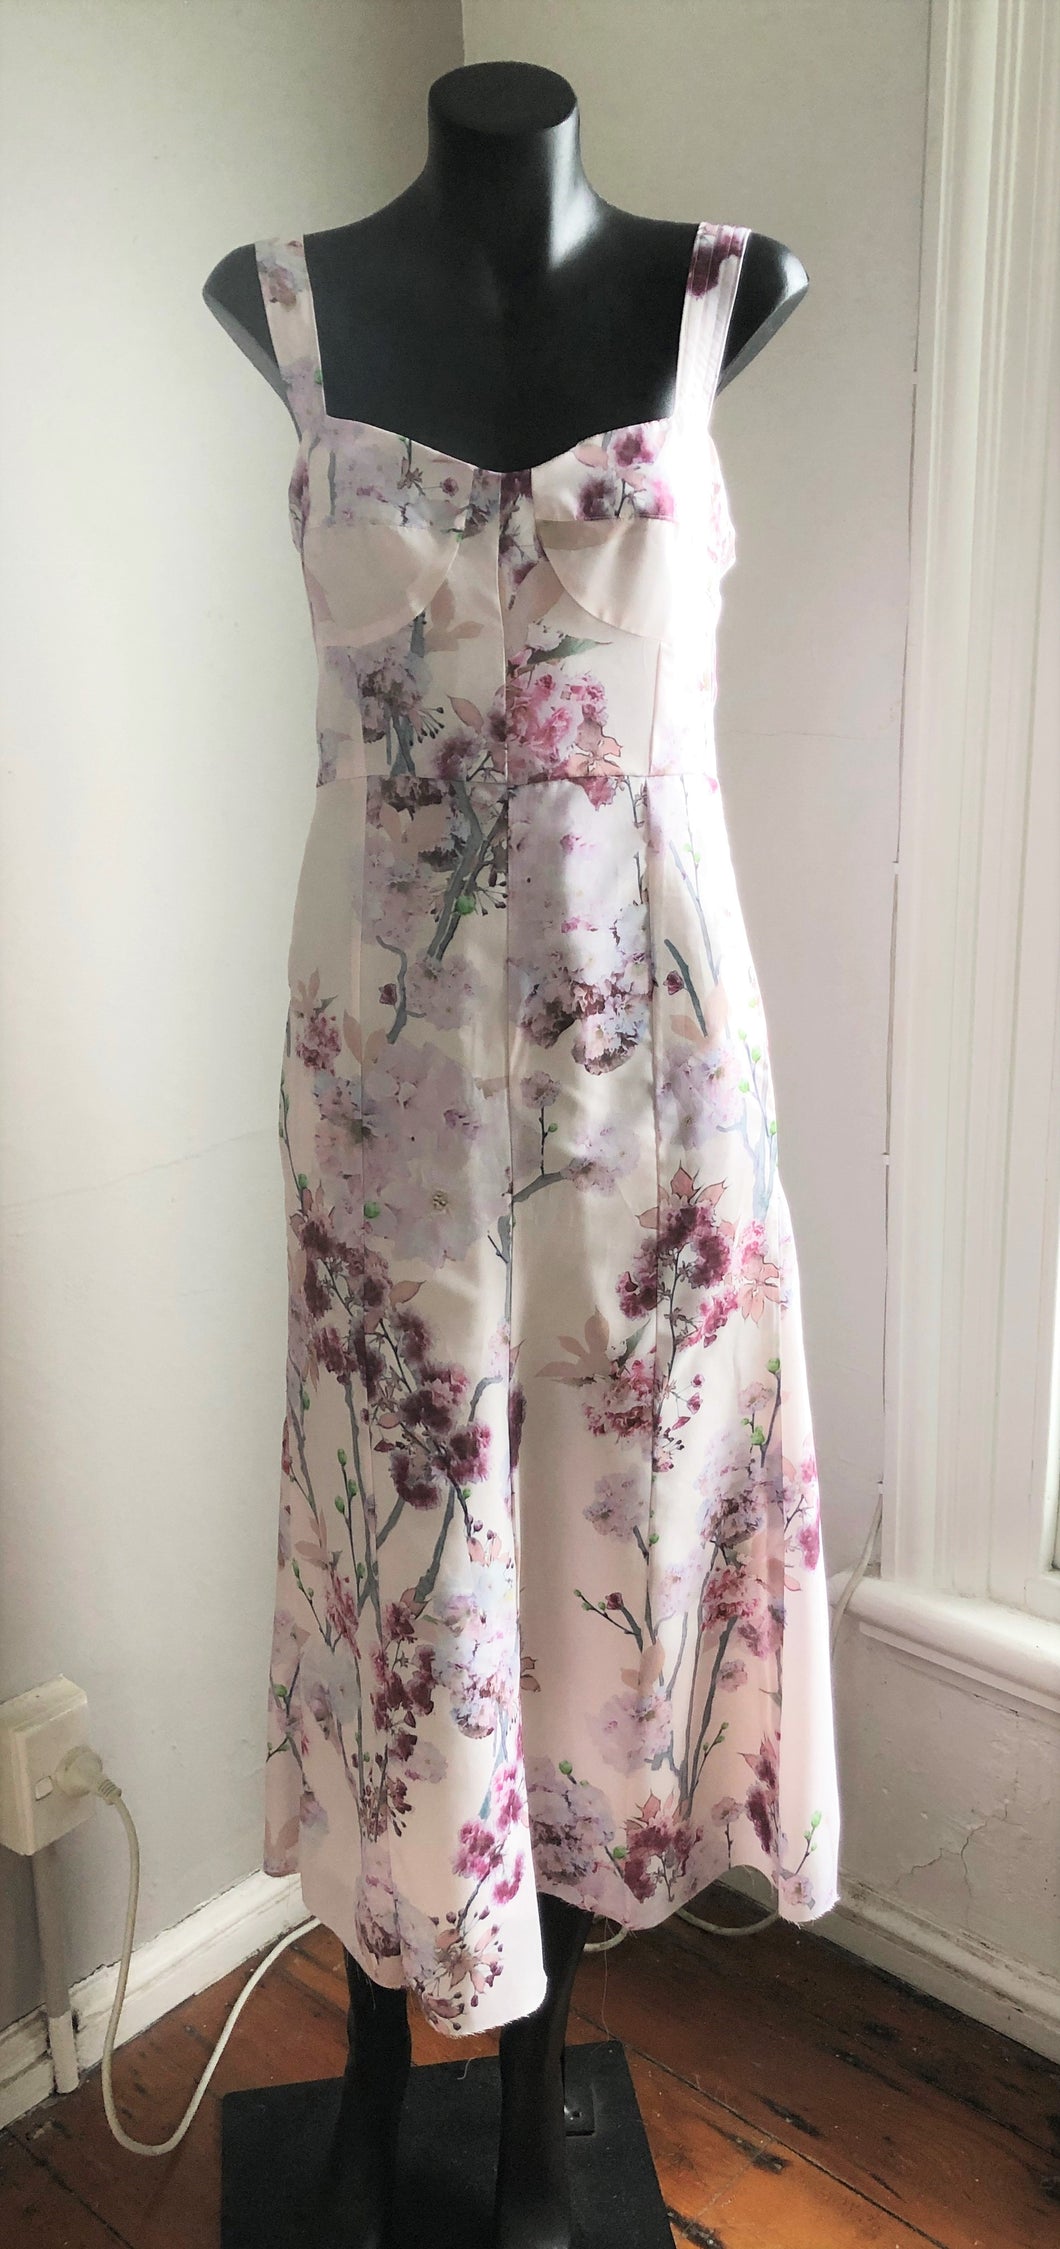 Chrystal Sloane Soft Pink Blossom Print Sundress 2023